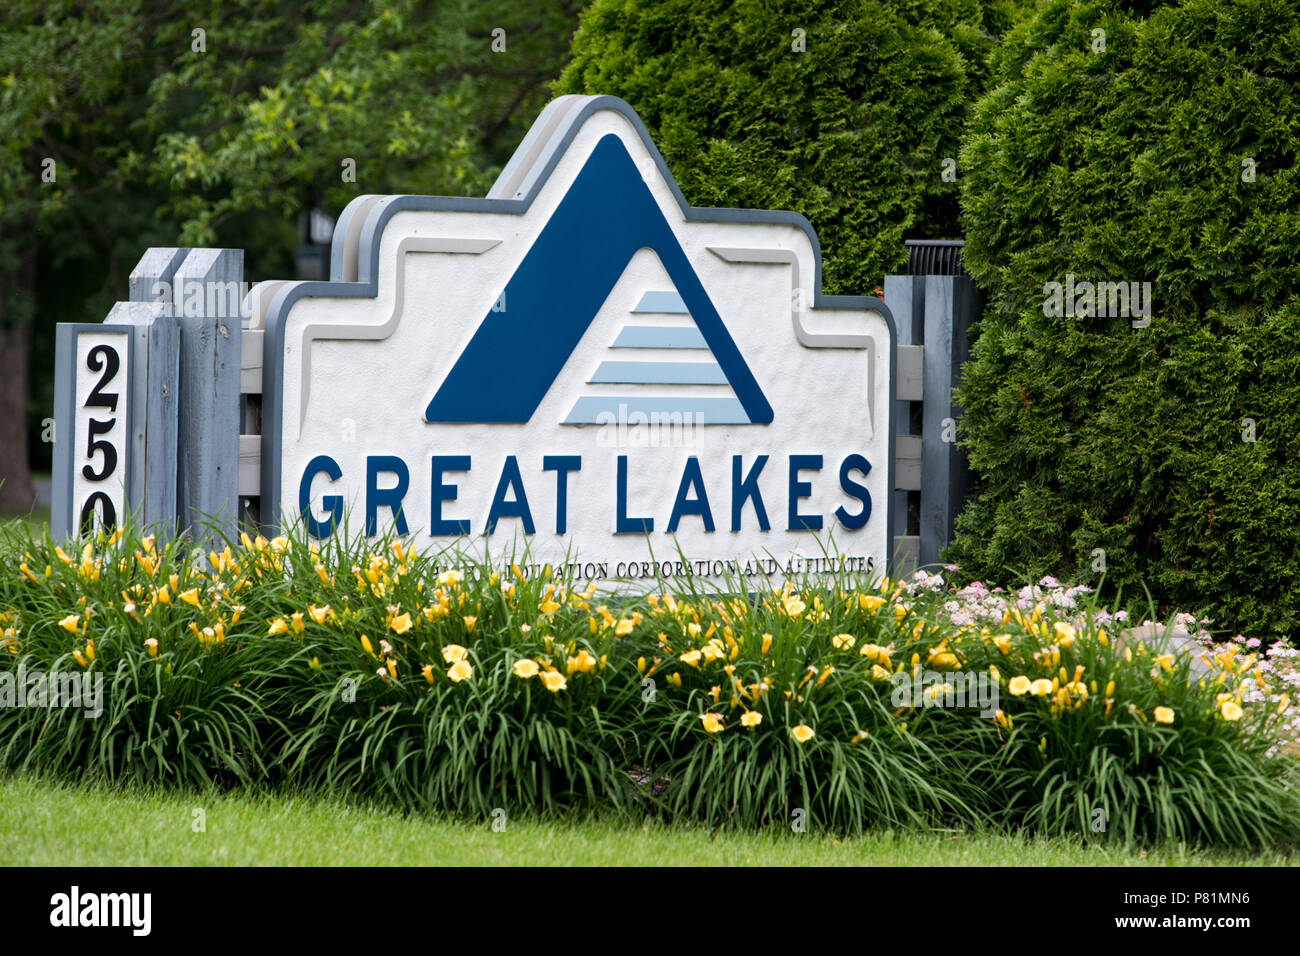 Un logo segno al di fuori della sede della Regione dei Grandi Laghi Istruzione Superiore Corporation a Madison, Wisconsin, il 23 giugno 2018. Foto Stock